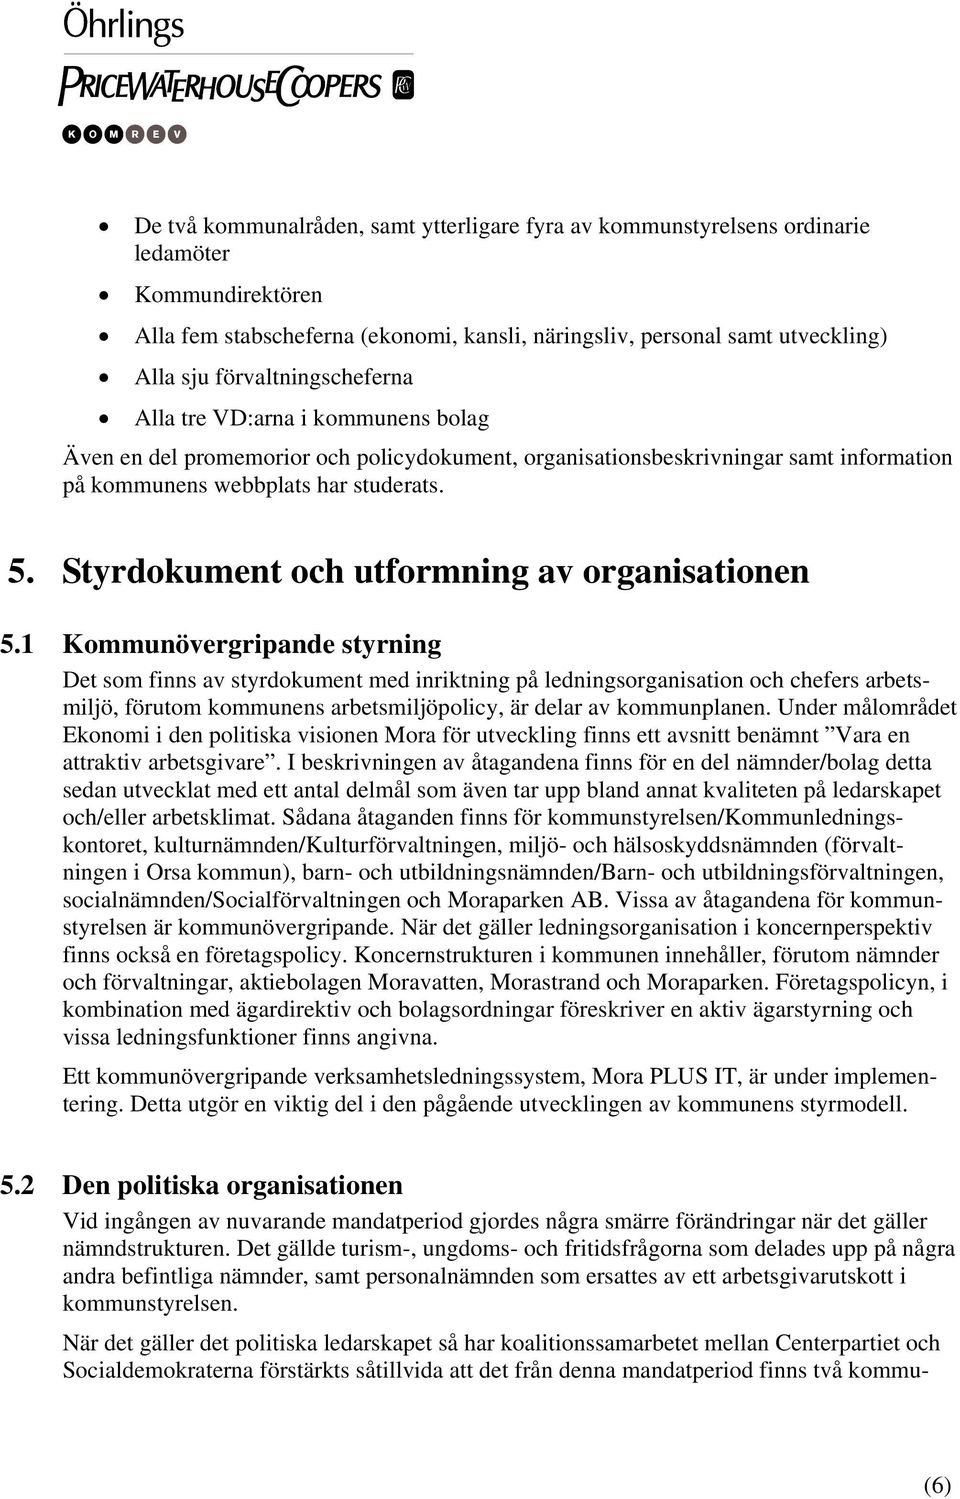 Styrdokument och utformning av organisationen 5.